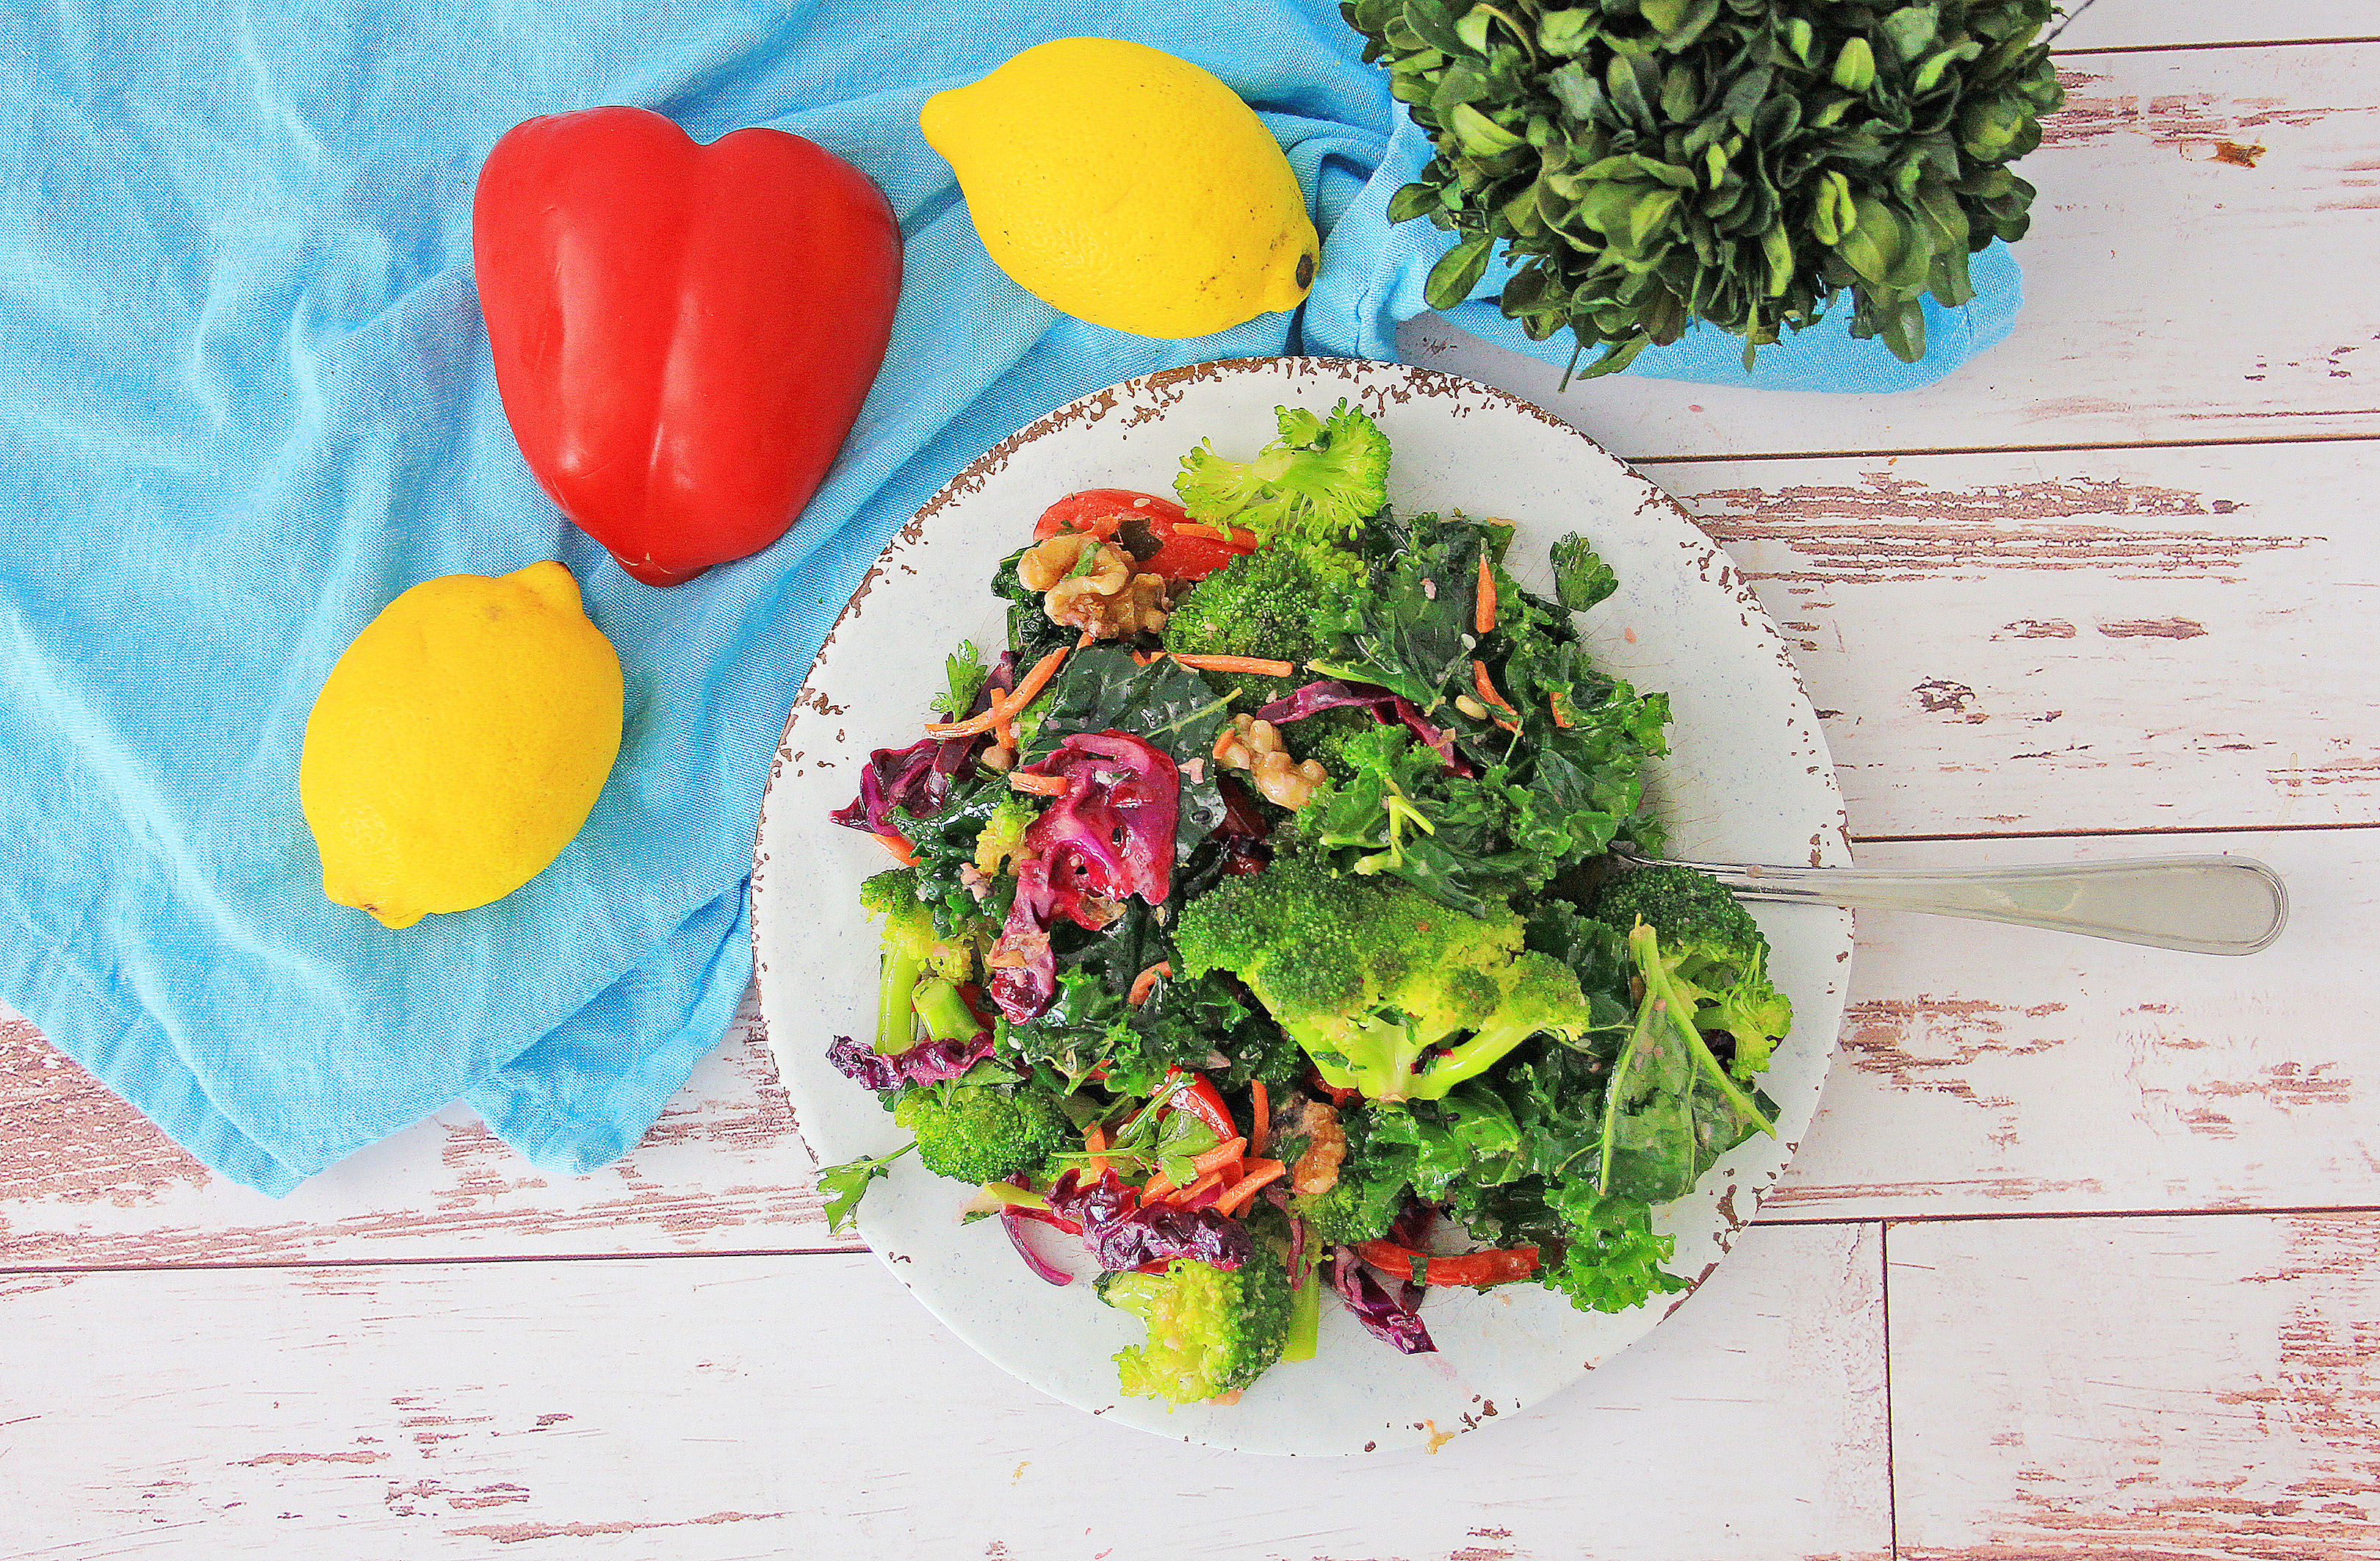 Healthy & Delicious Detox Salad Recipe!